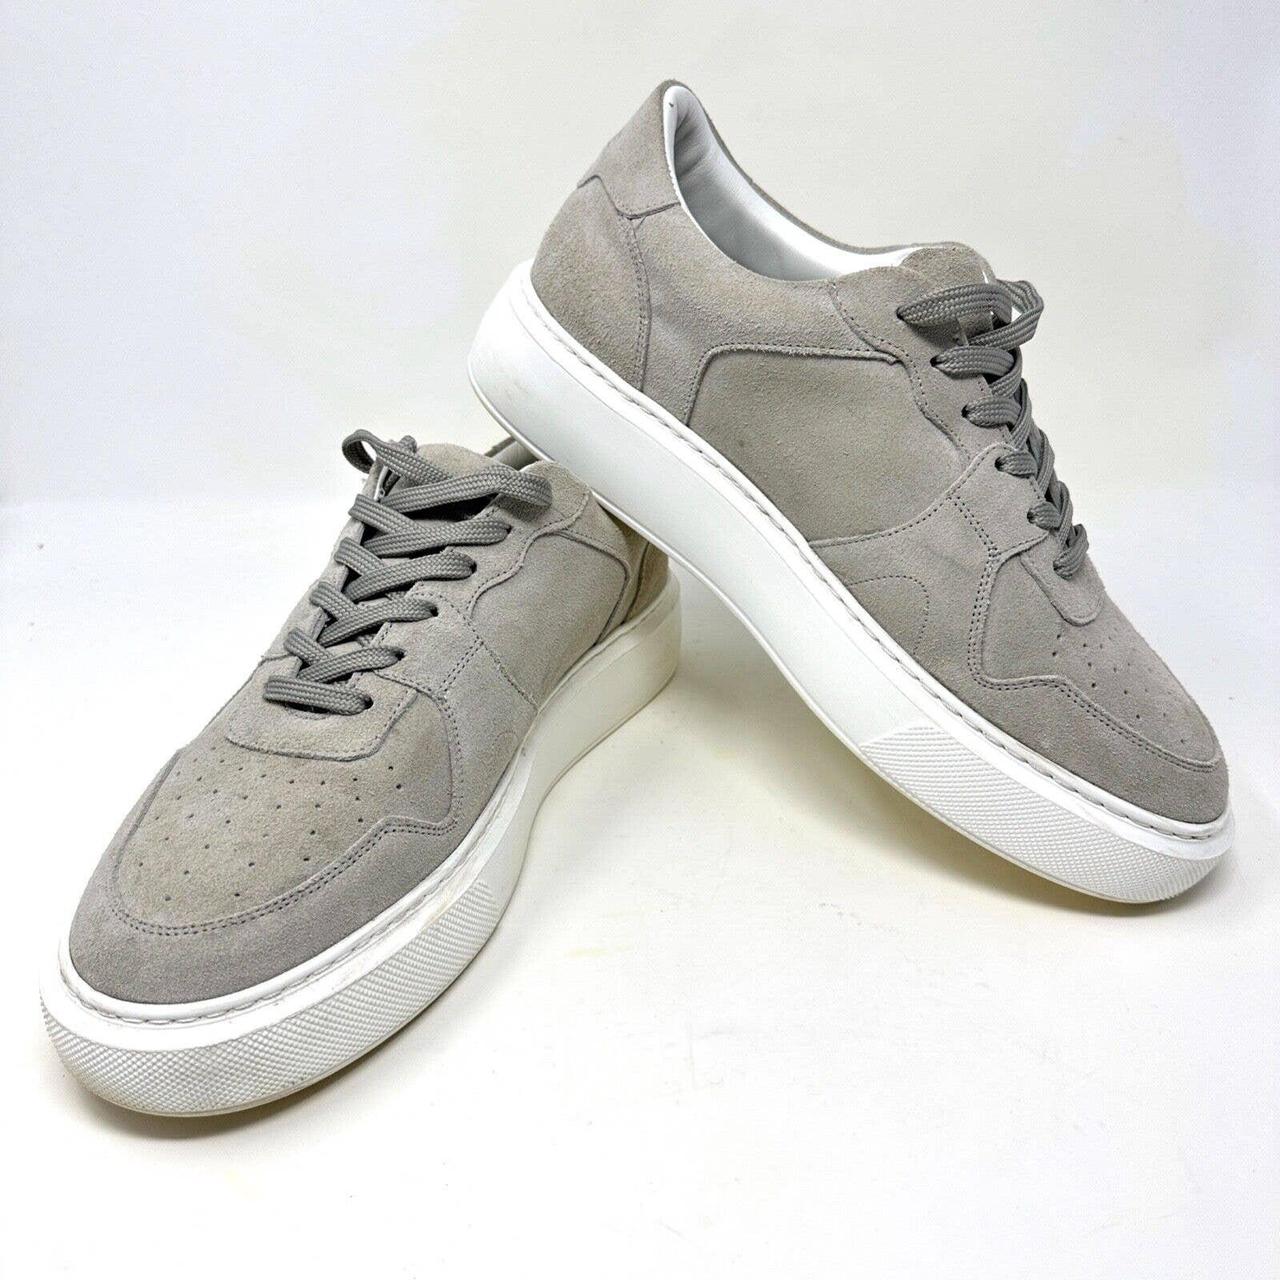 Arne Grey Suede Men's Trainers Sneakers UK Size 10... - Depop